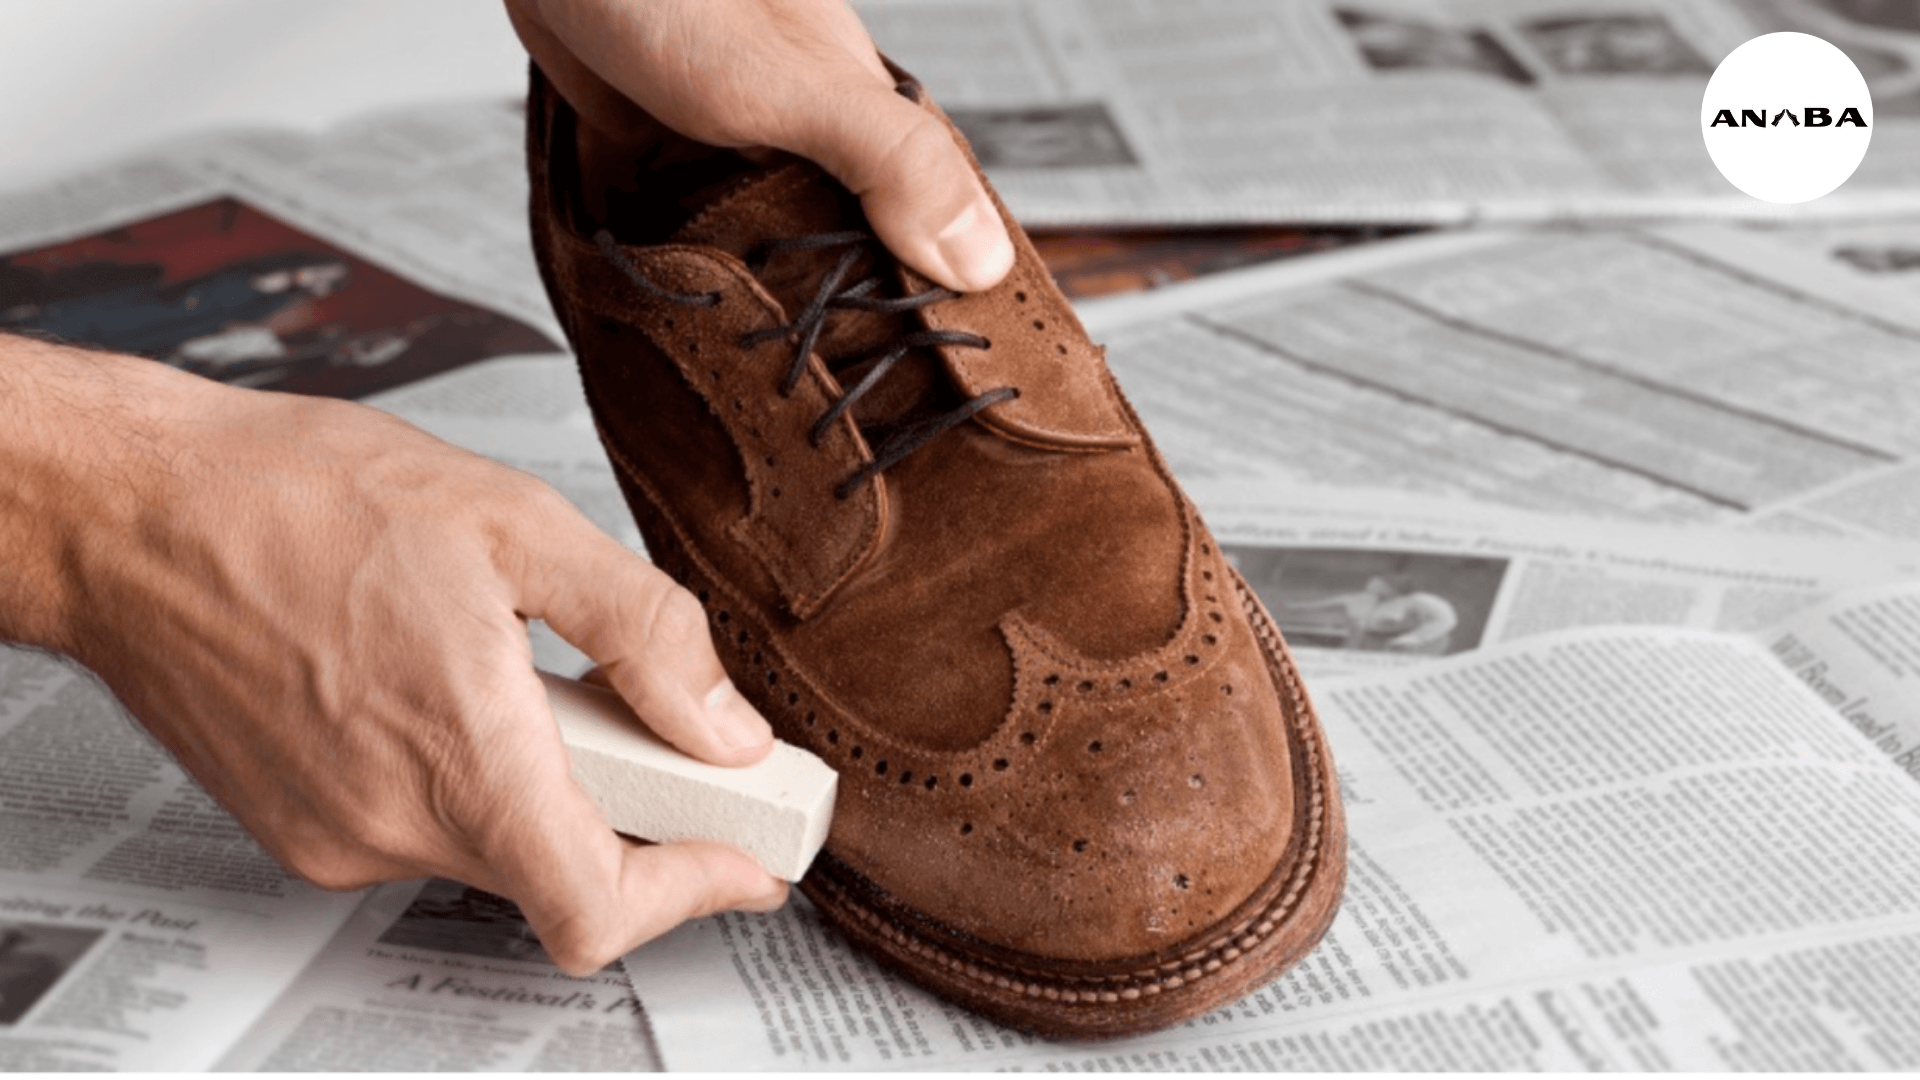 Lưu ý rằng một số loại sản phẩm vệ sinh có thể gây ra một số tác động không mong muốn cho da giày.